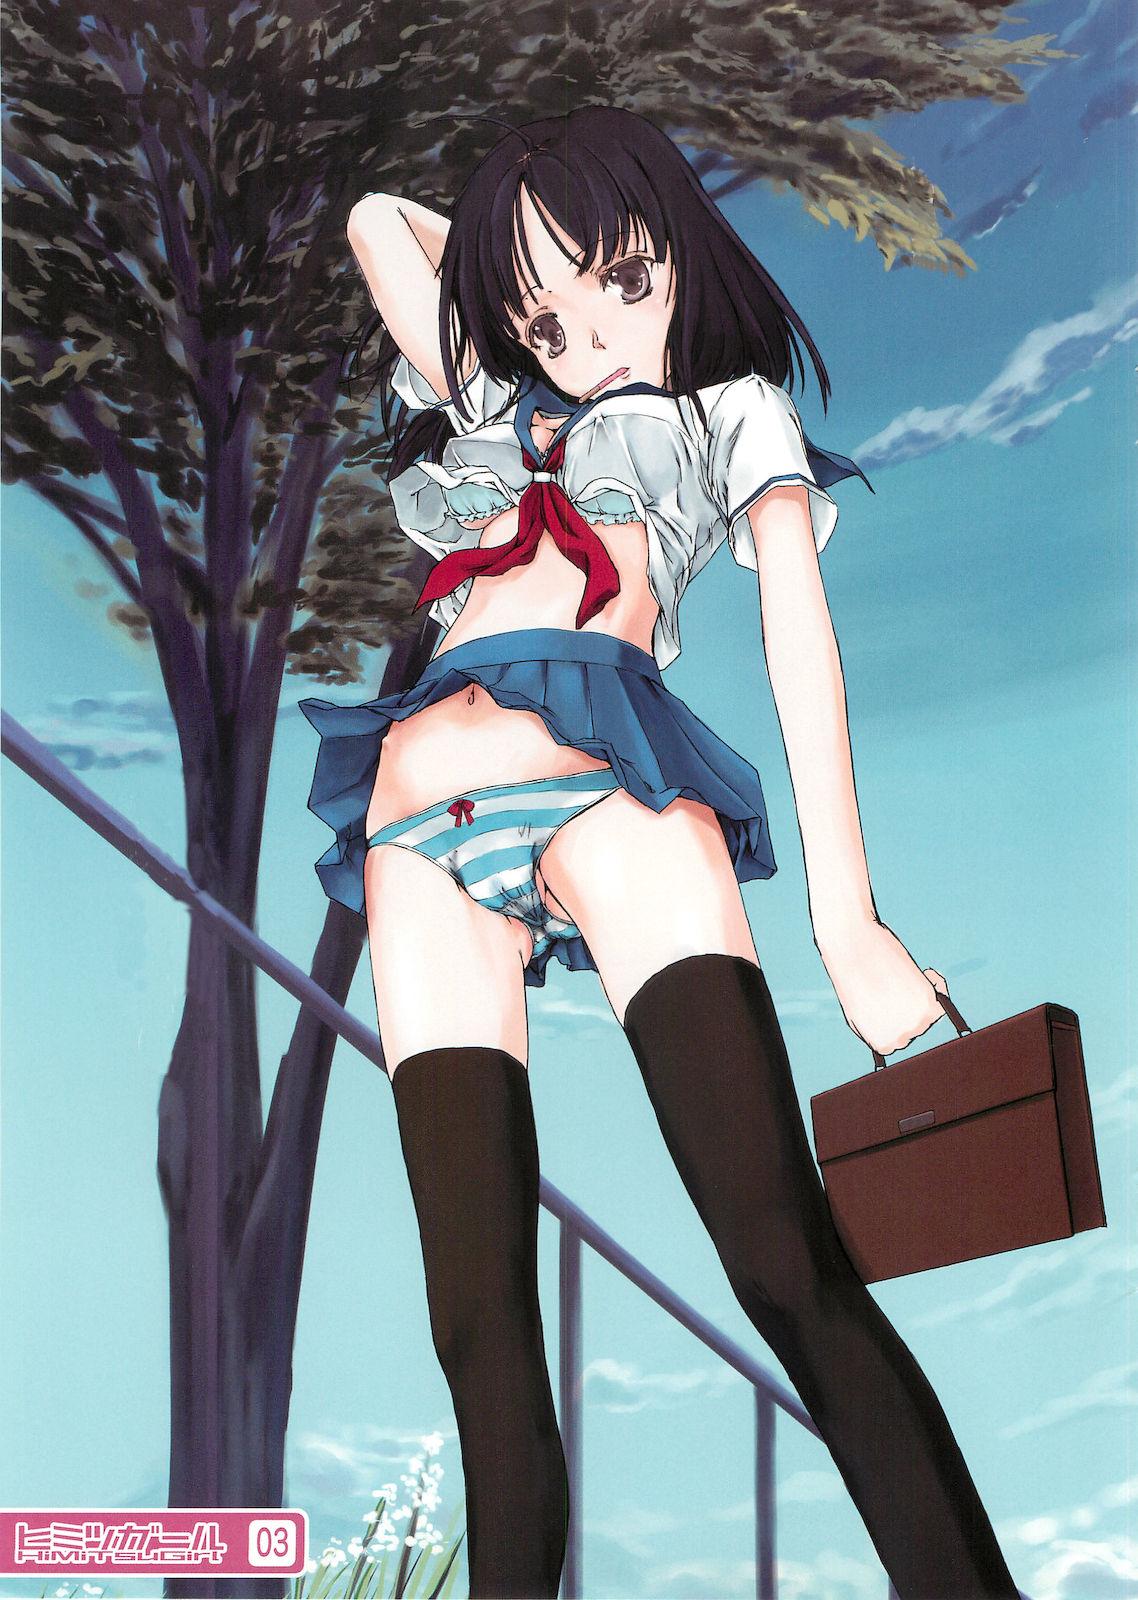 Himitsu Girl + Vol. 01 Sakuragawa Yukino 3